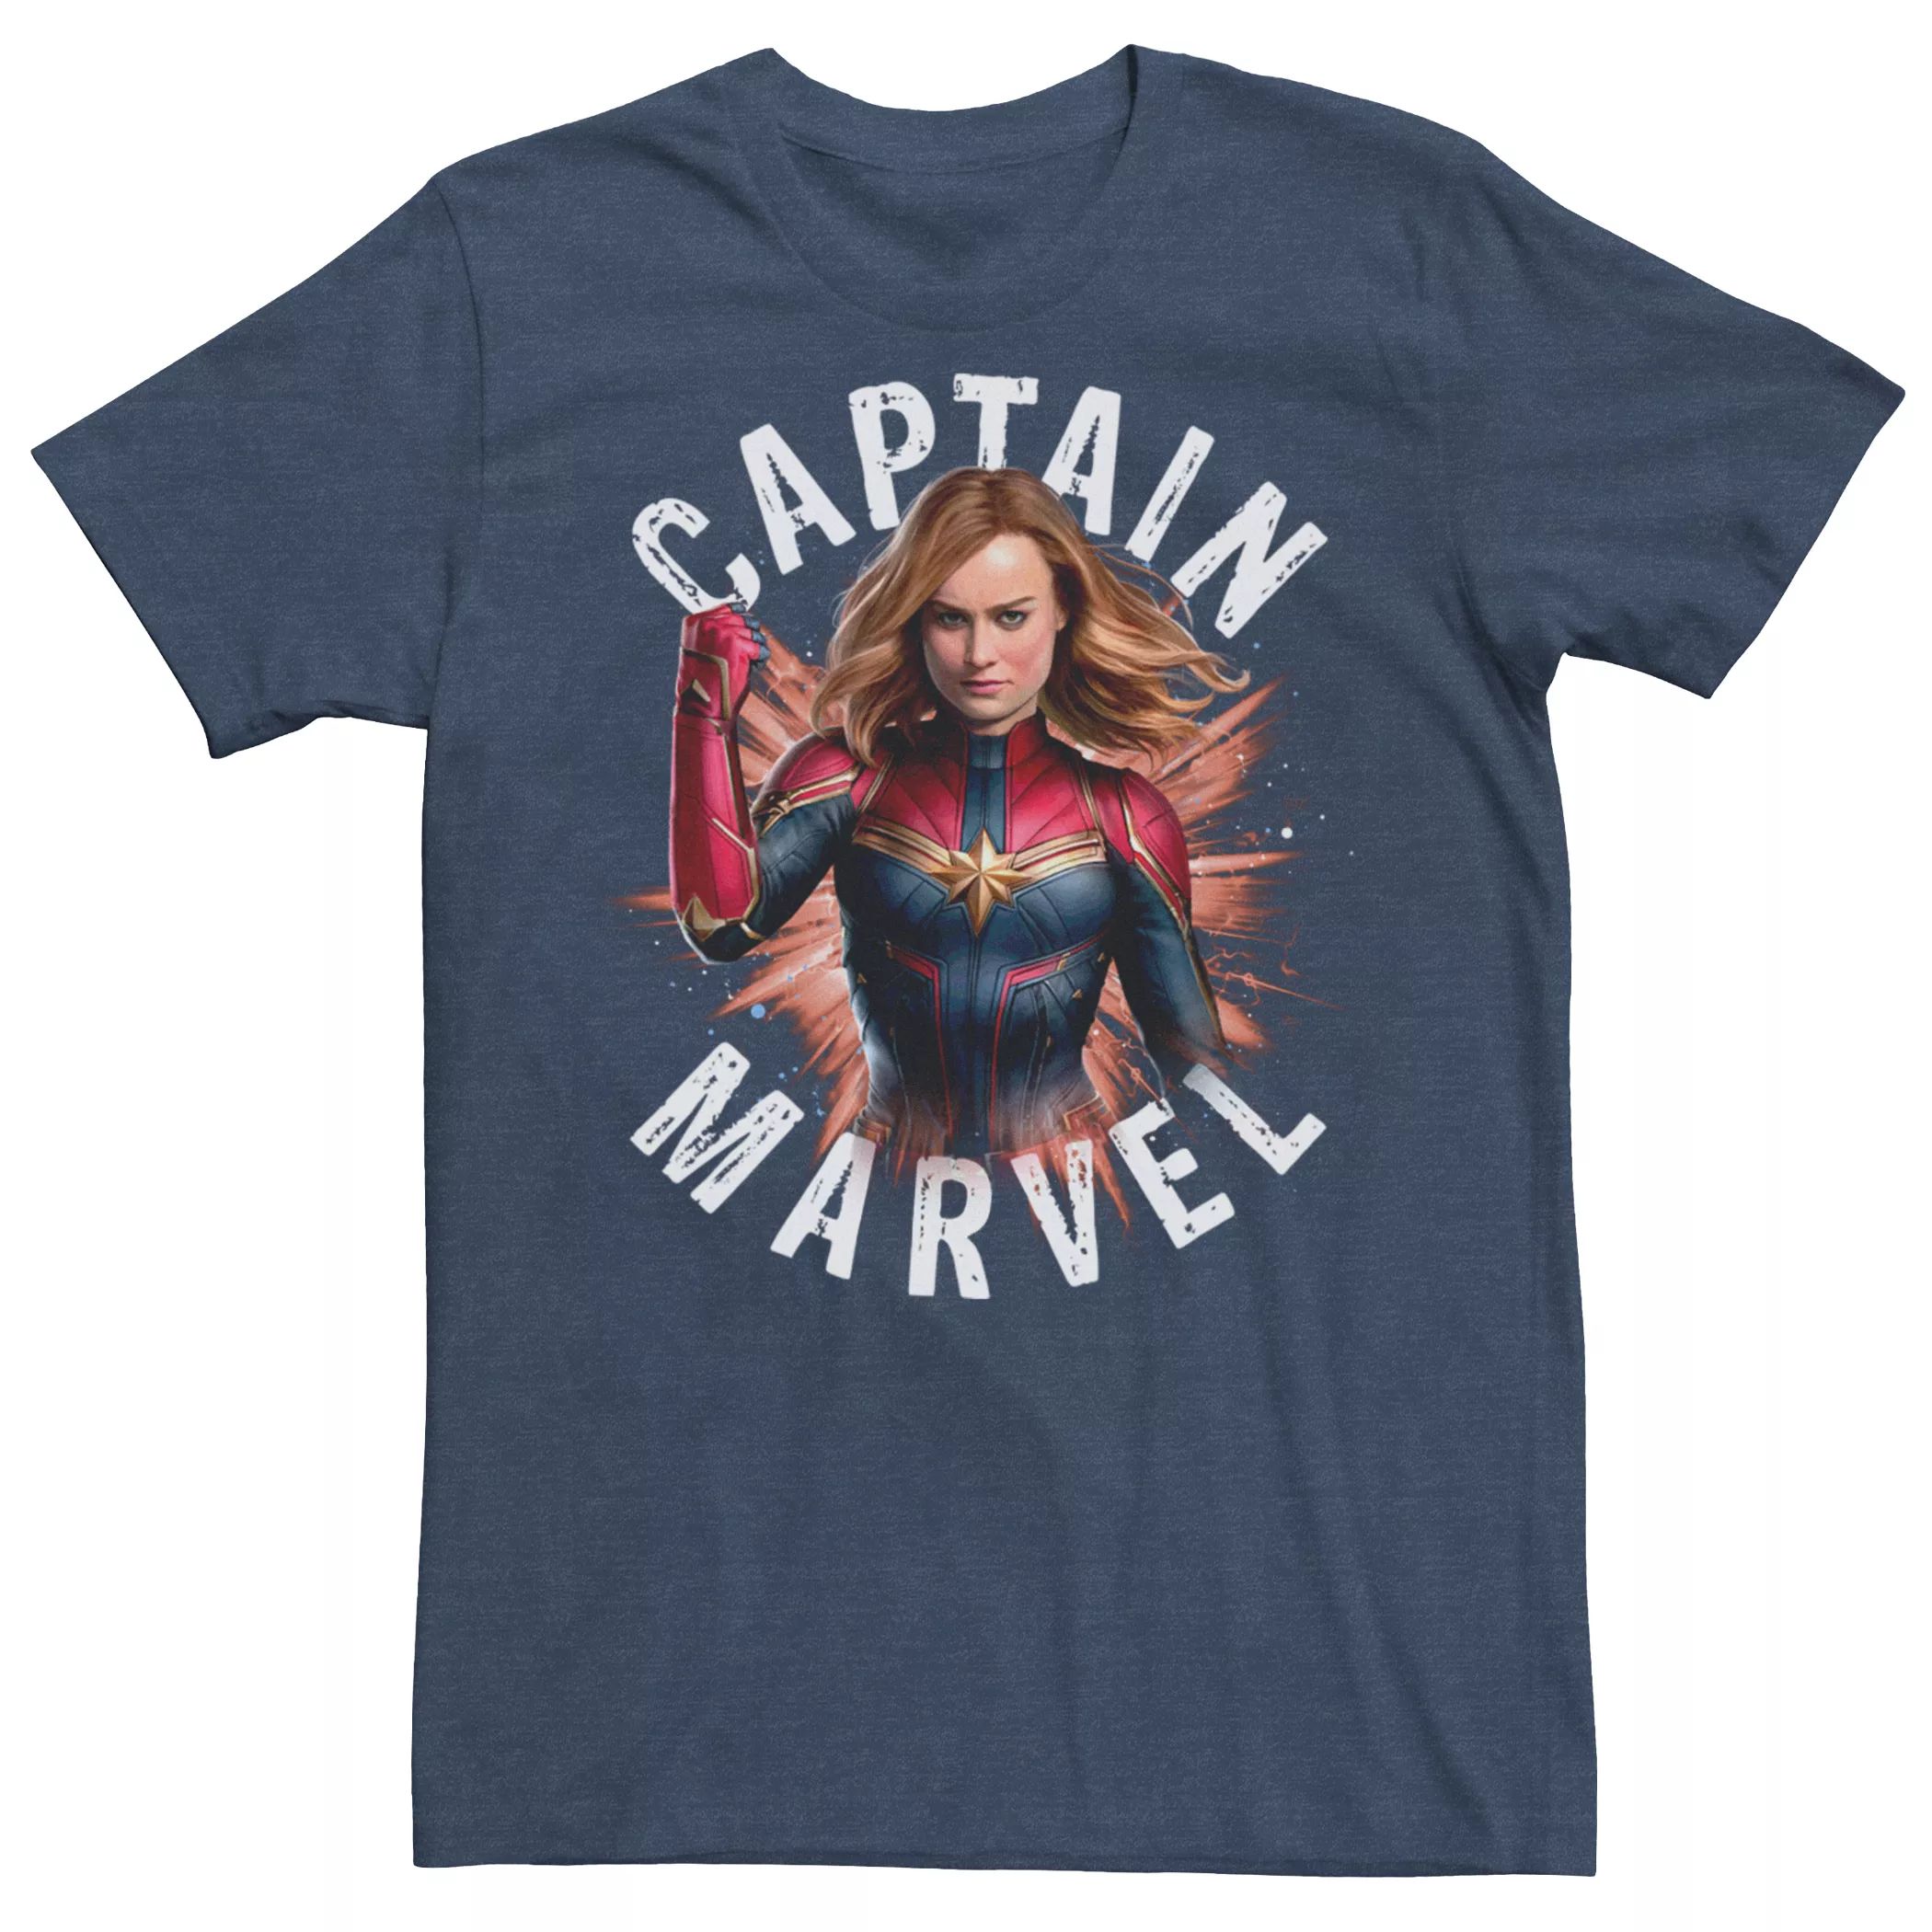 Мужская футболка Marvel Avengers Endgame Captain Marvel Licensed Character fs holding фигурка marvel captain marvel endgame